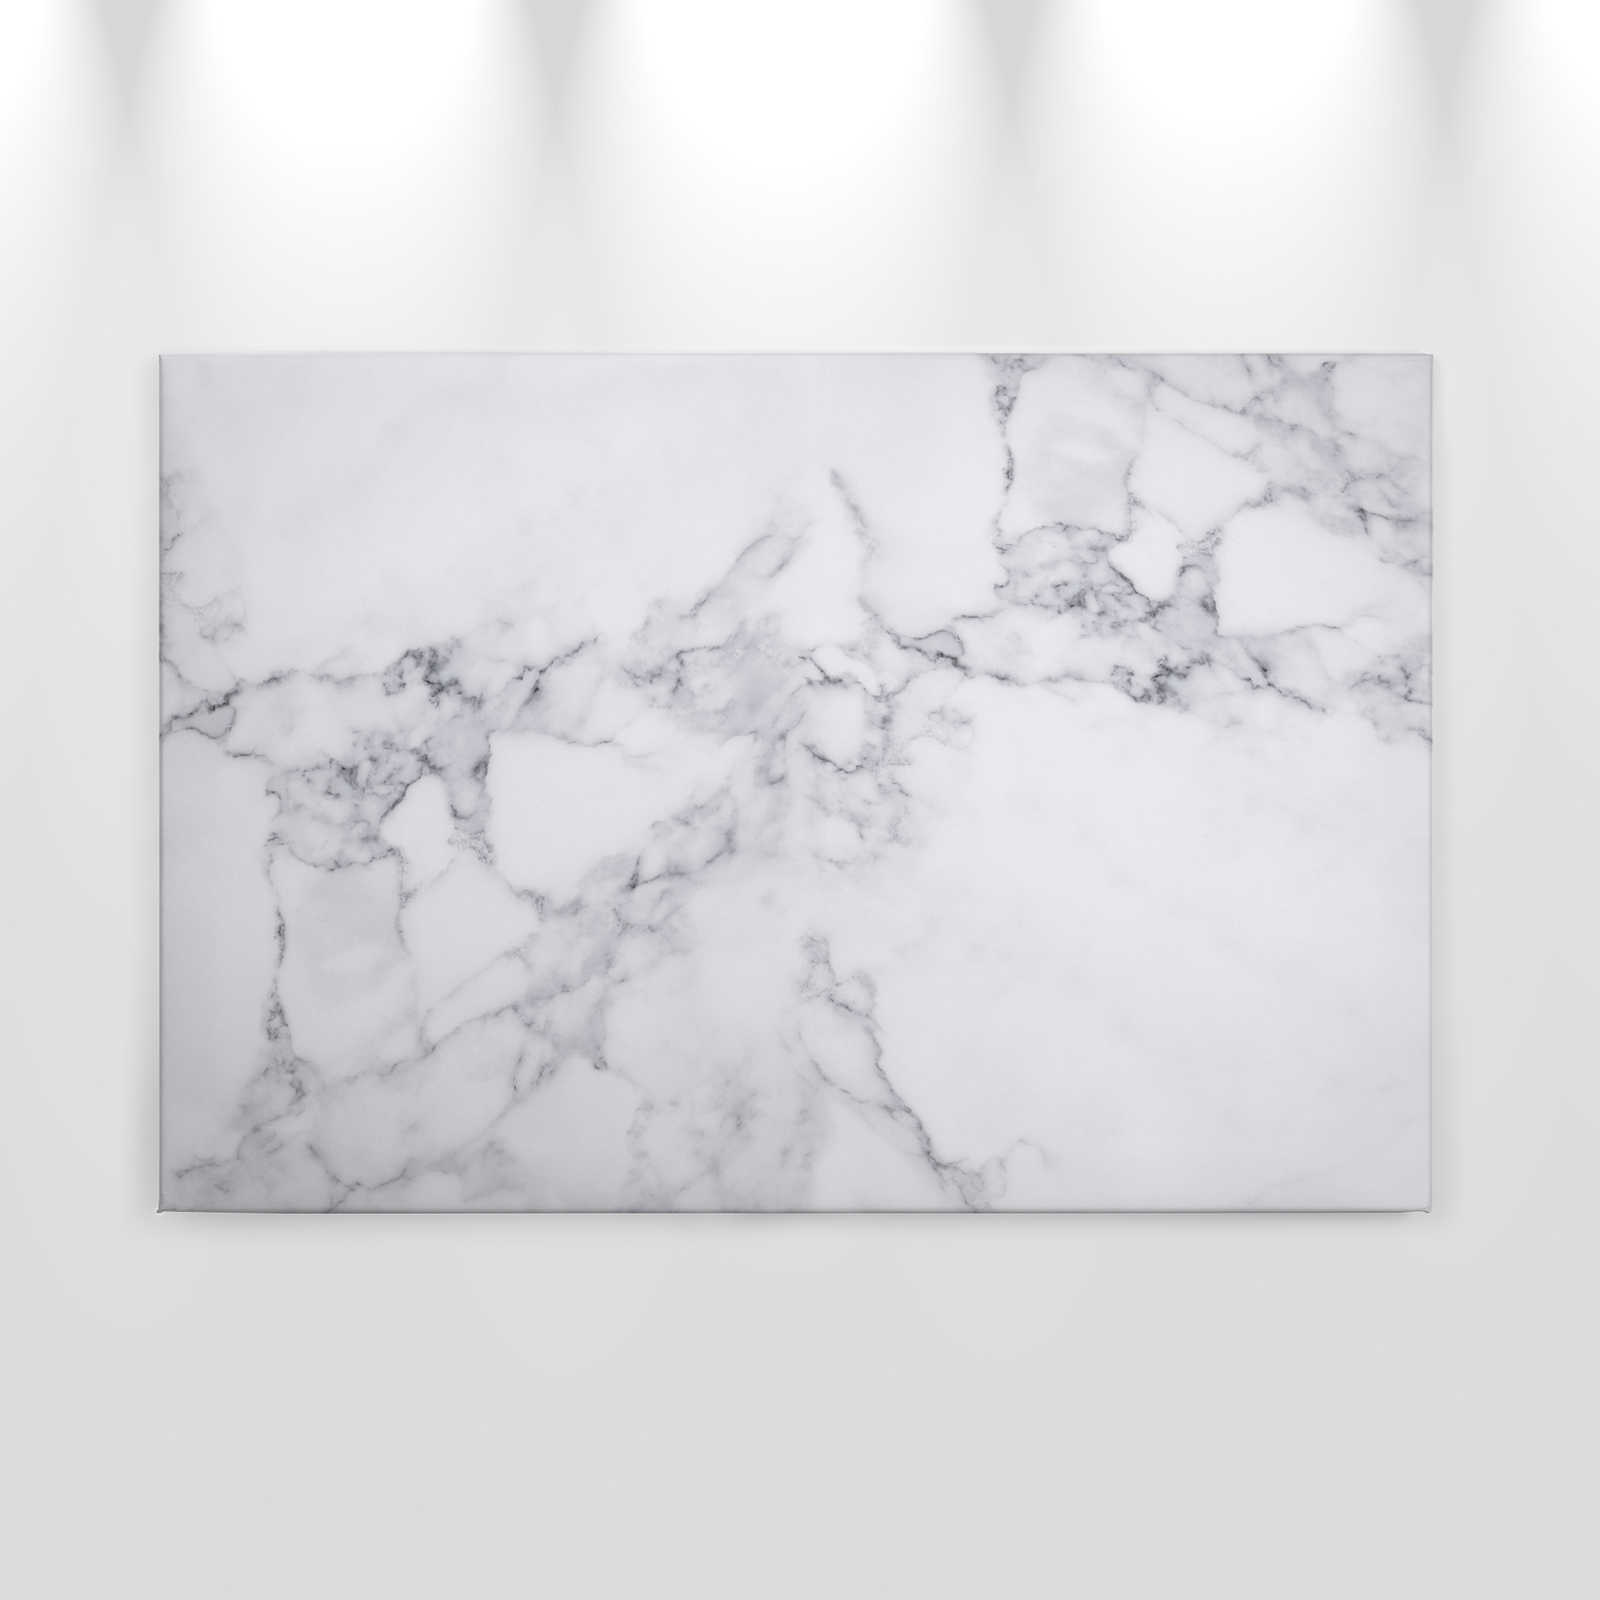             Toile effet marbre - 0,90 m x 0,60 m
        